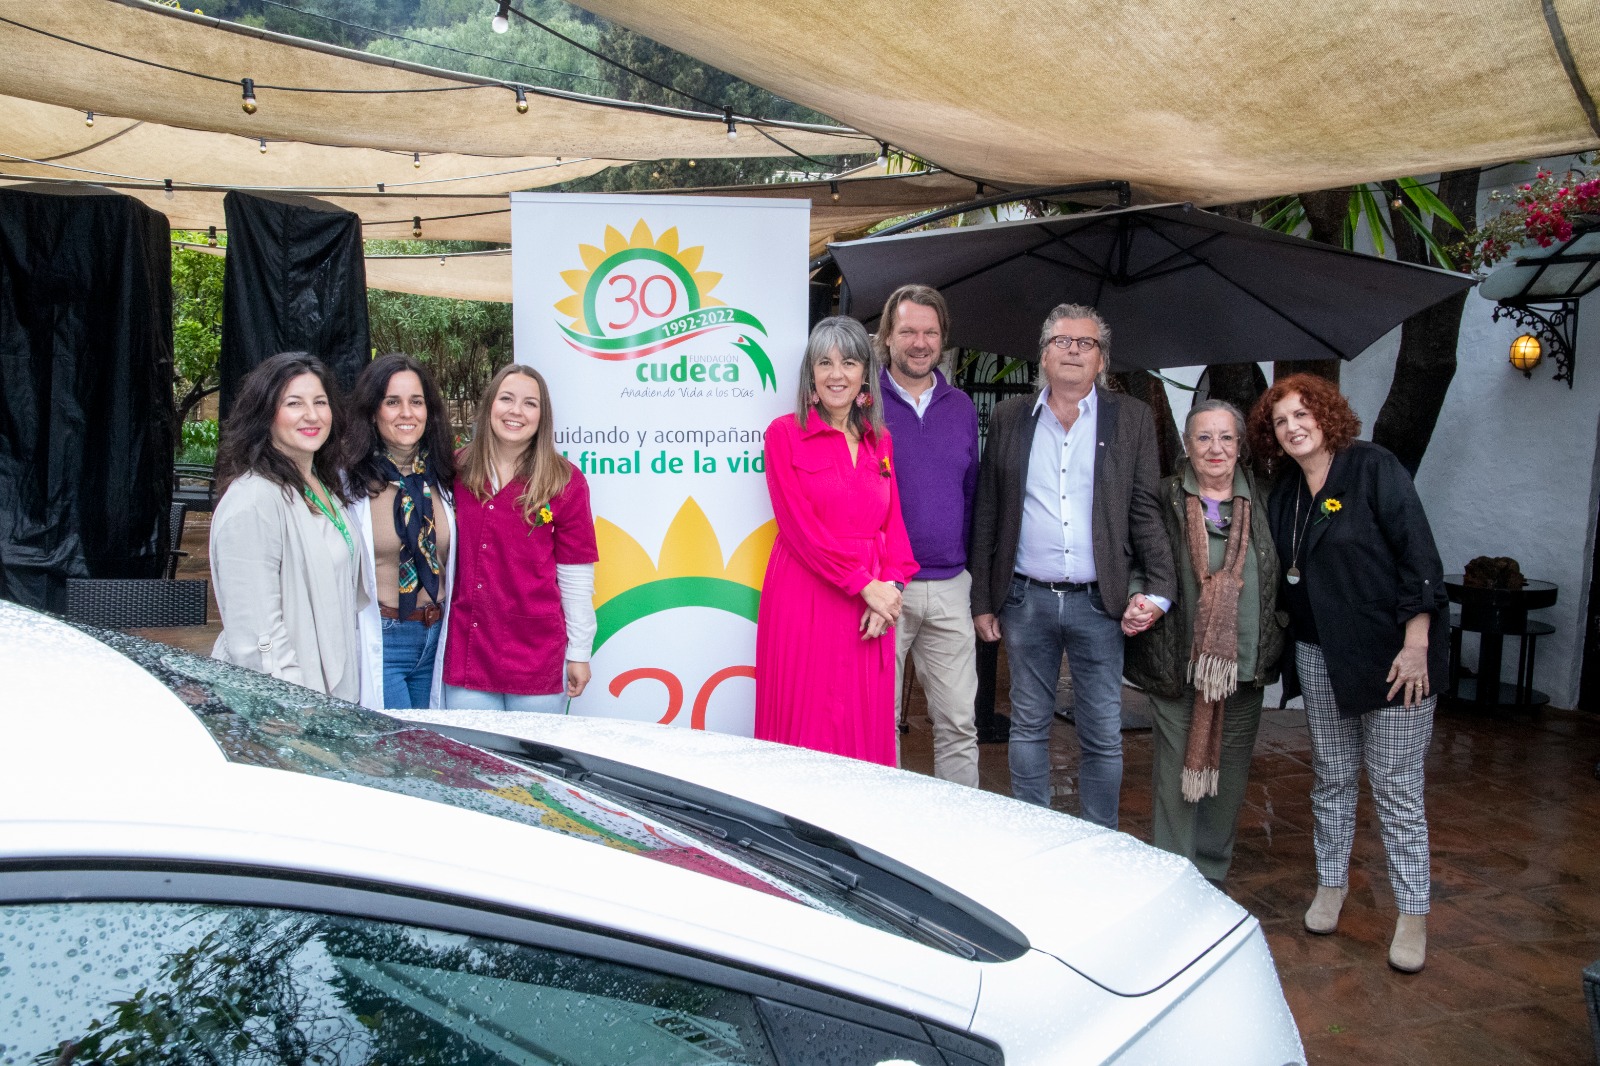 Marbella Dutch Business Club to sponsor a Cudeca Car